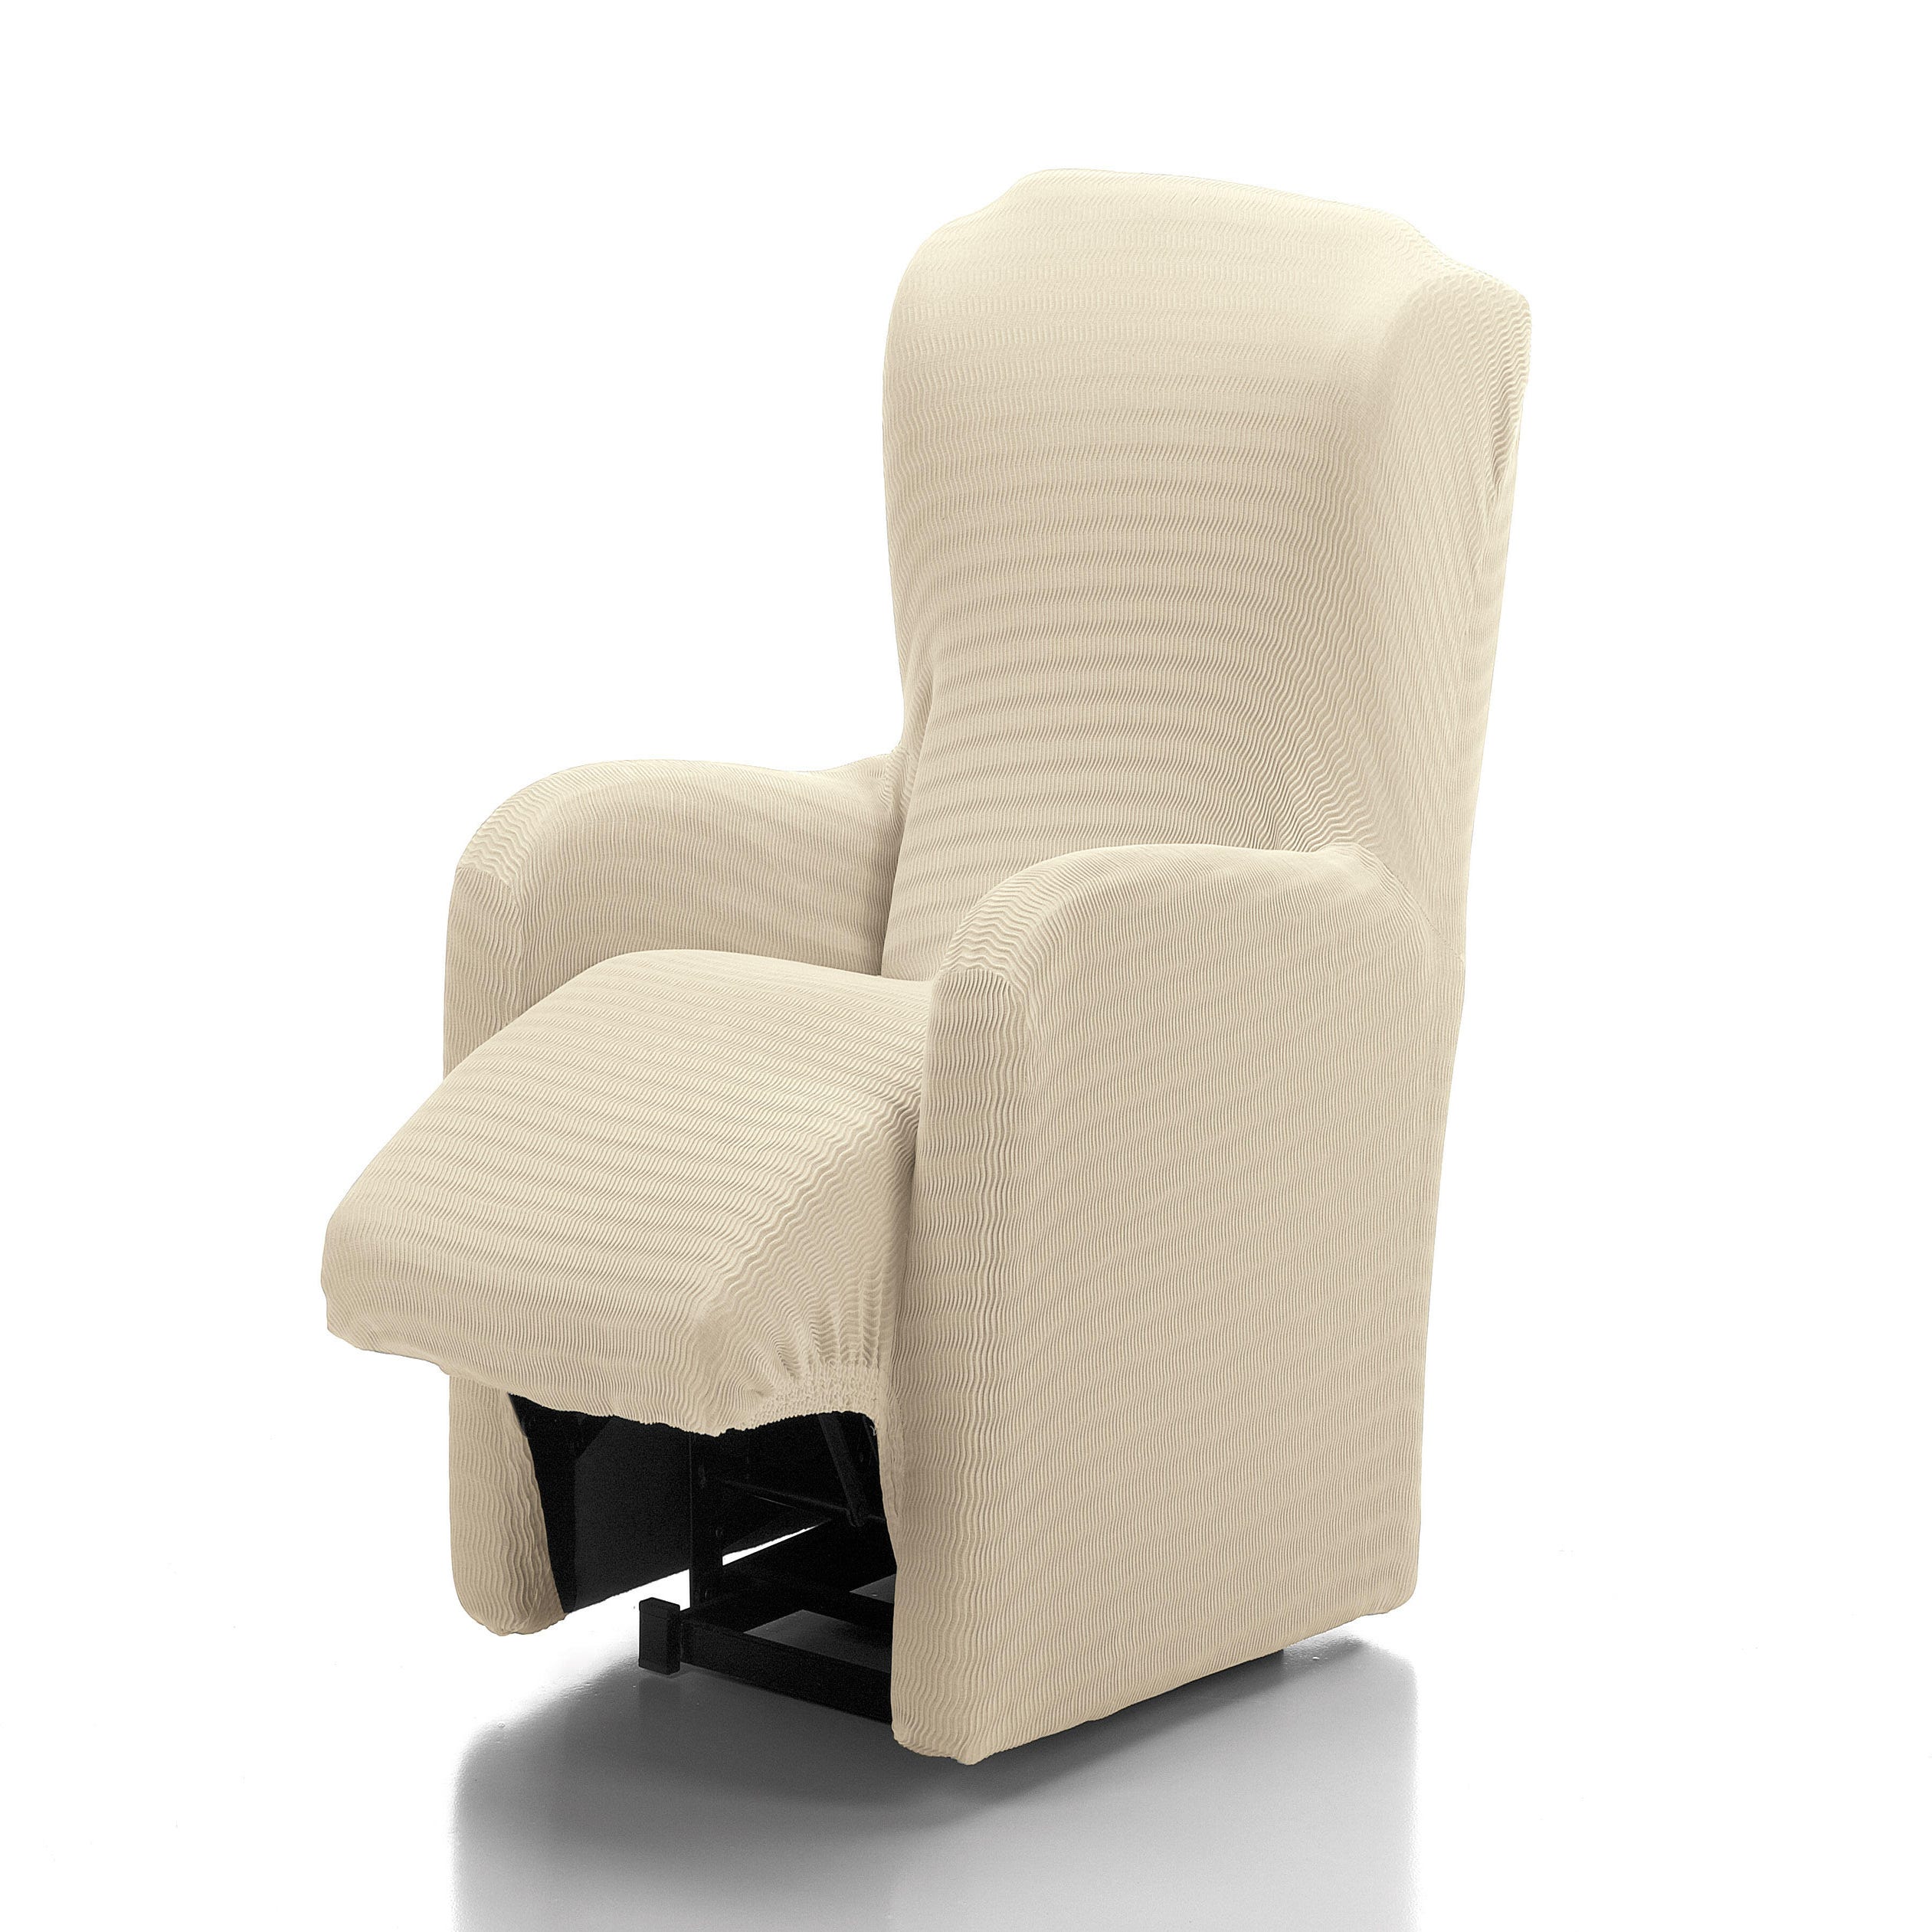 Funda elástica para sillón relax Tenerife con pie por separado o